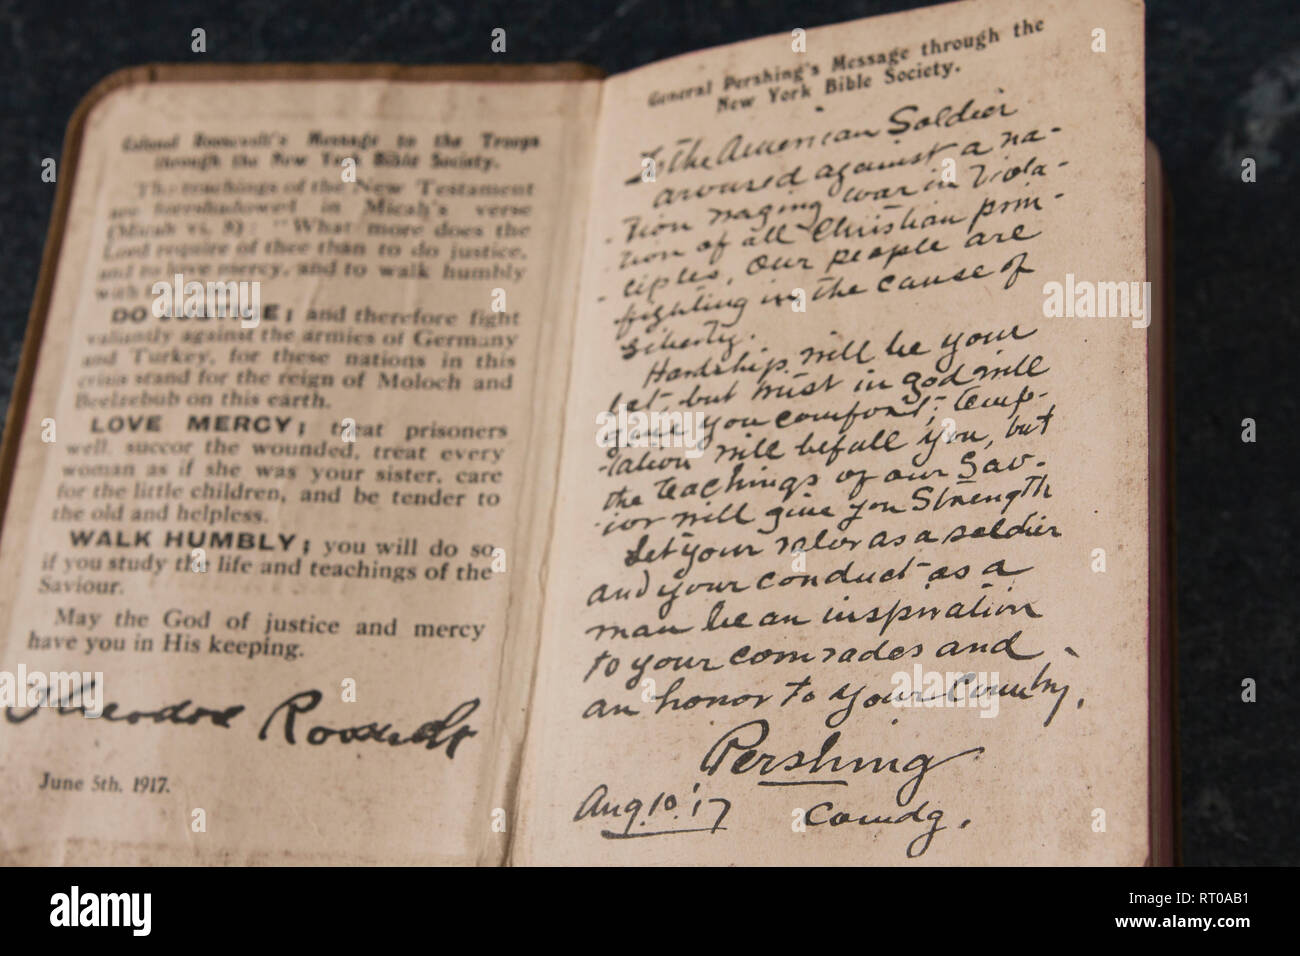 Un Testamento de Servicio activo, o la Biblia de un pequeño soldado de la primera Guerra Mundial, con un mensaje del Coronel Theodore Roosevelt y el General John Pershing. Foto de stock